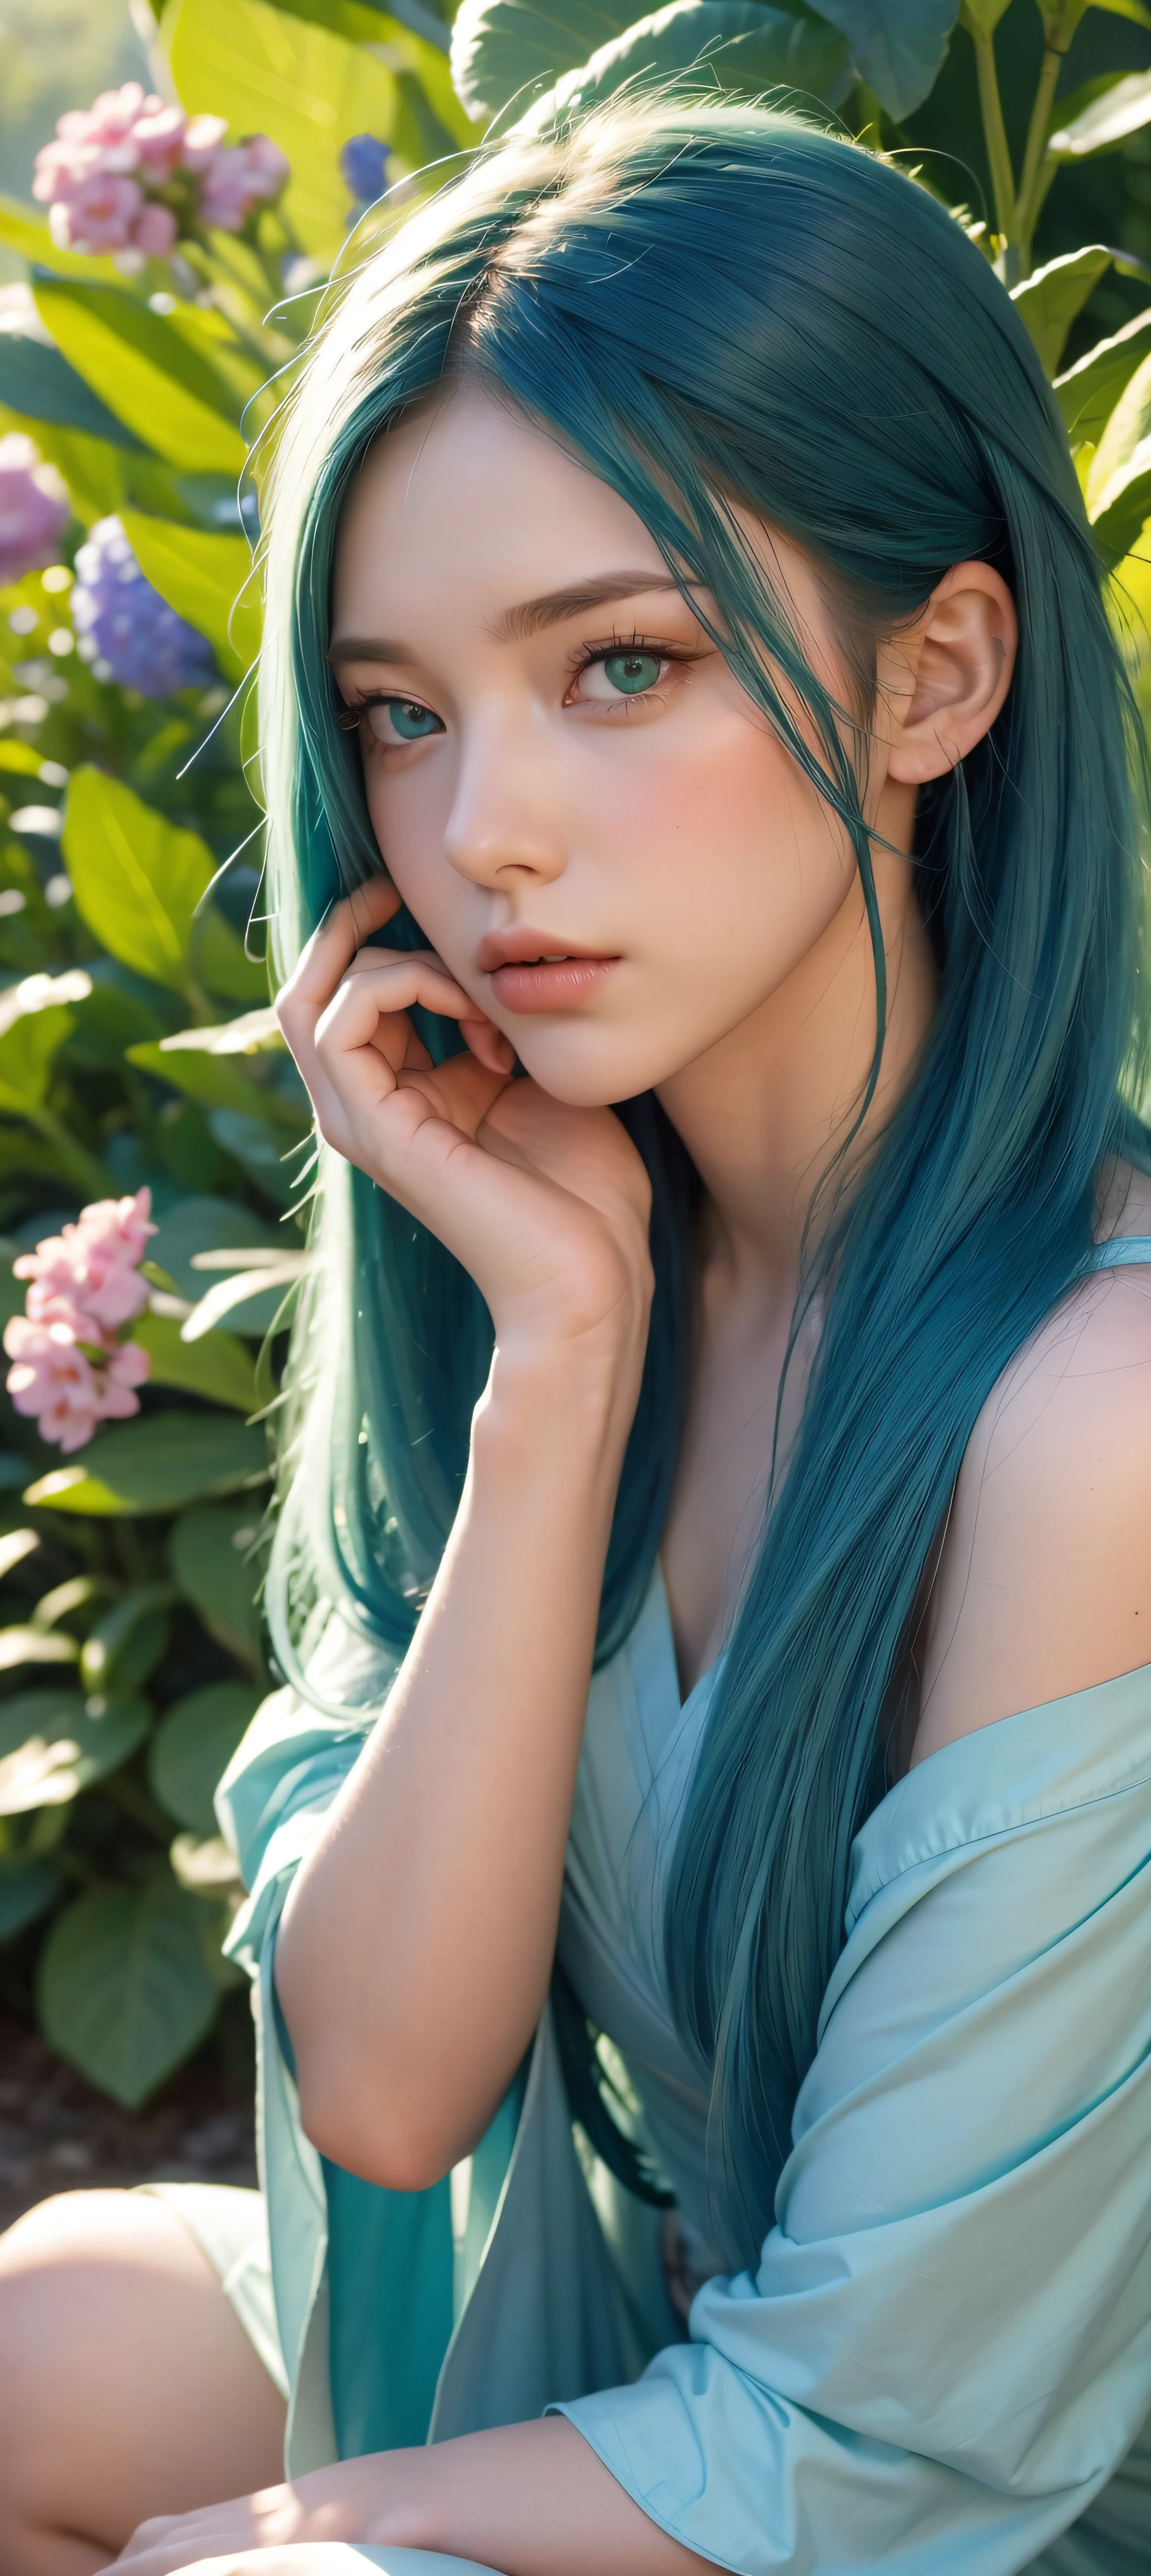 8k, brut, (chef-d&#39;œuvre, meilleure qualité),1 fille aux longs cheveux bleu sarcelle assise dans un champ de plantes vertes et de fleurs, Yeux verts détaillés, sa main sous son menton, éclairage chaleureux, belle robe rouge, beau premier plan